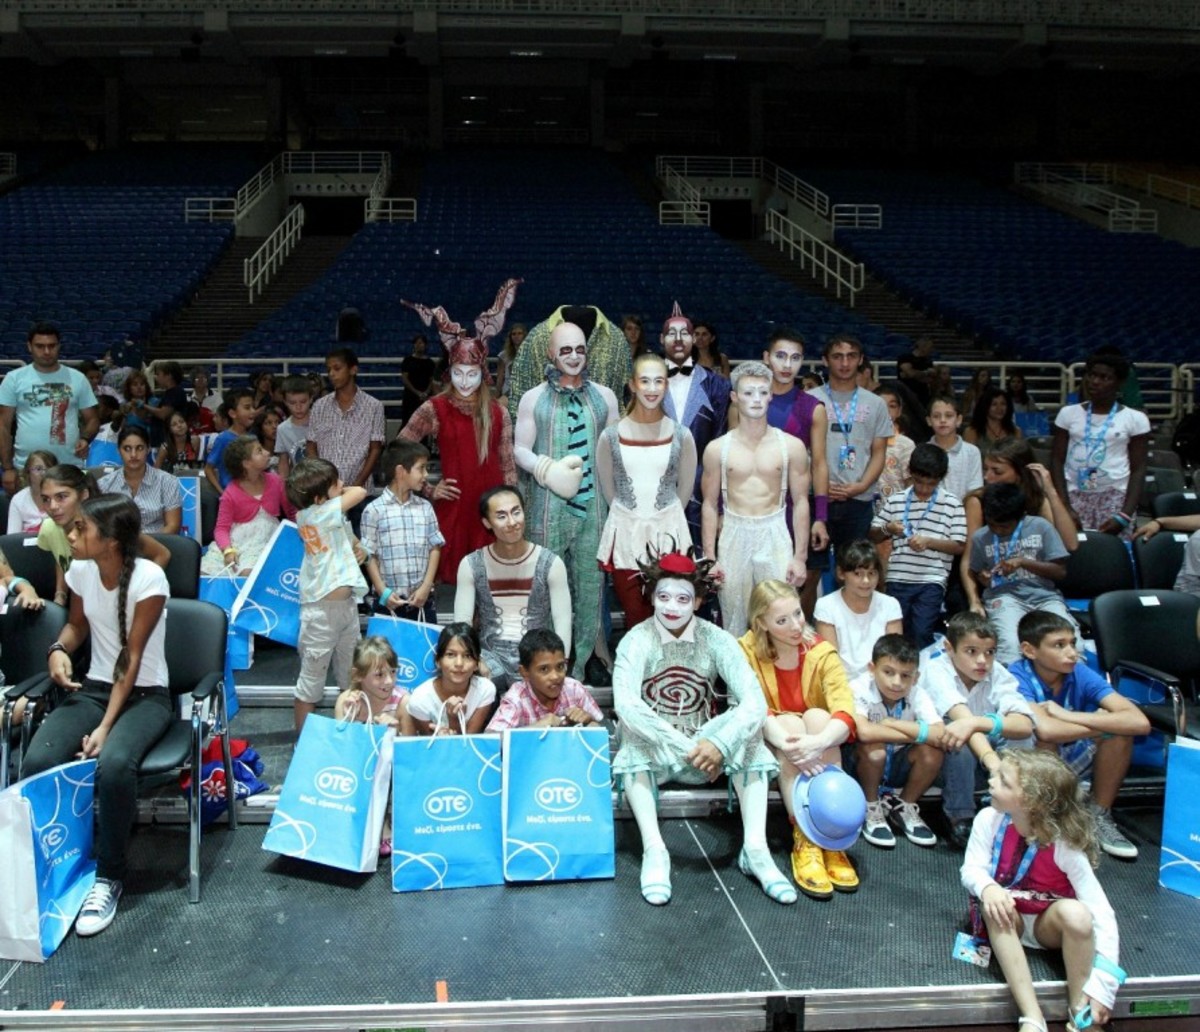 ΟΤΕ: Δωρεάν η παράσταση του Cirque du Soleil για 500 παιδιά